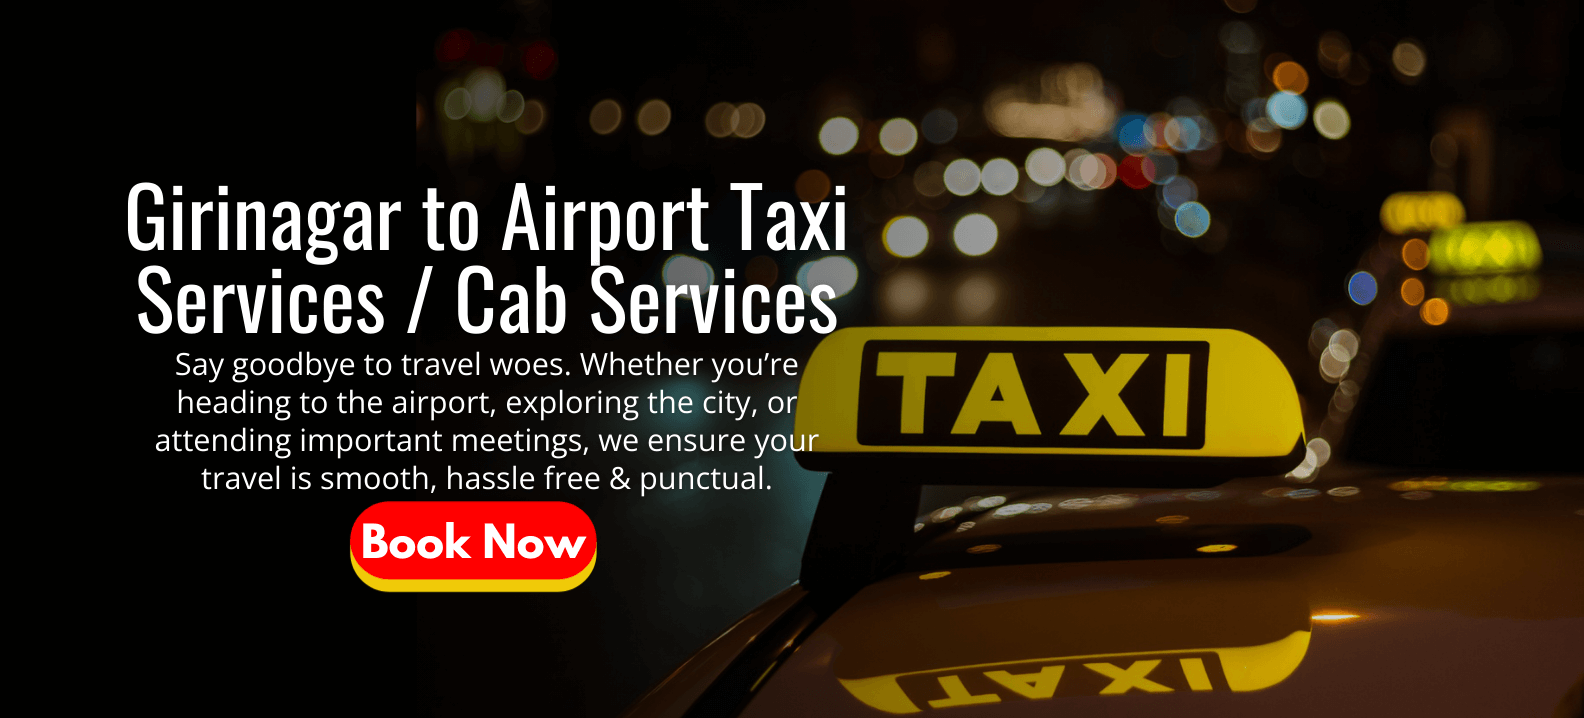 Girinagar to Airport Taxi Services _ Cab Services